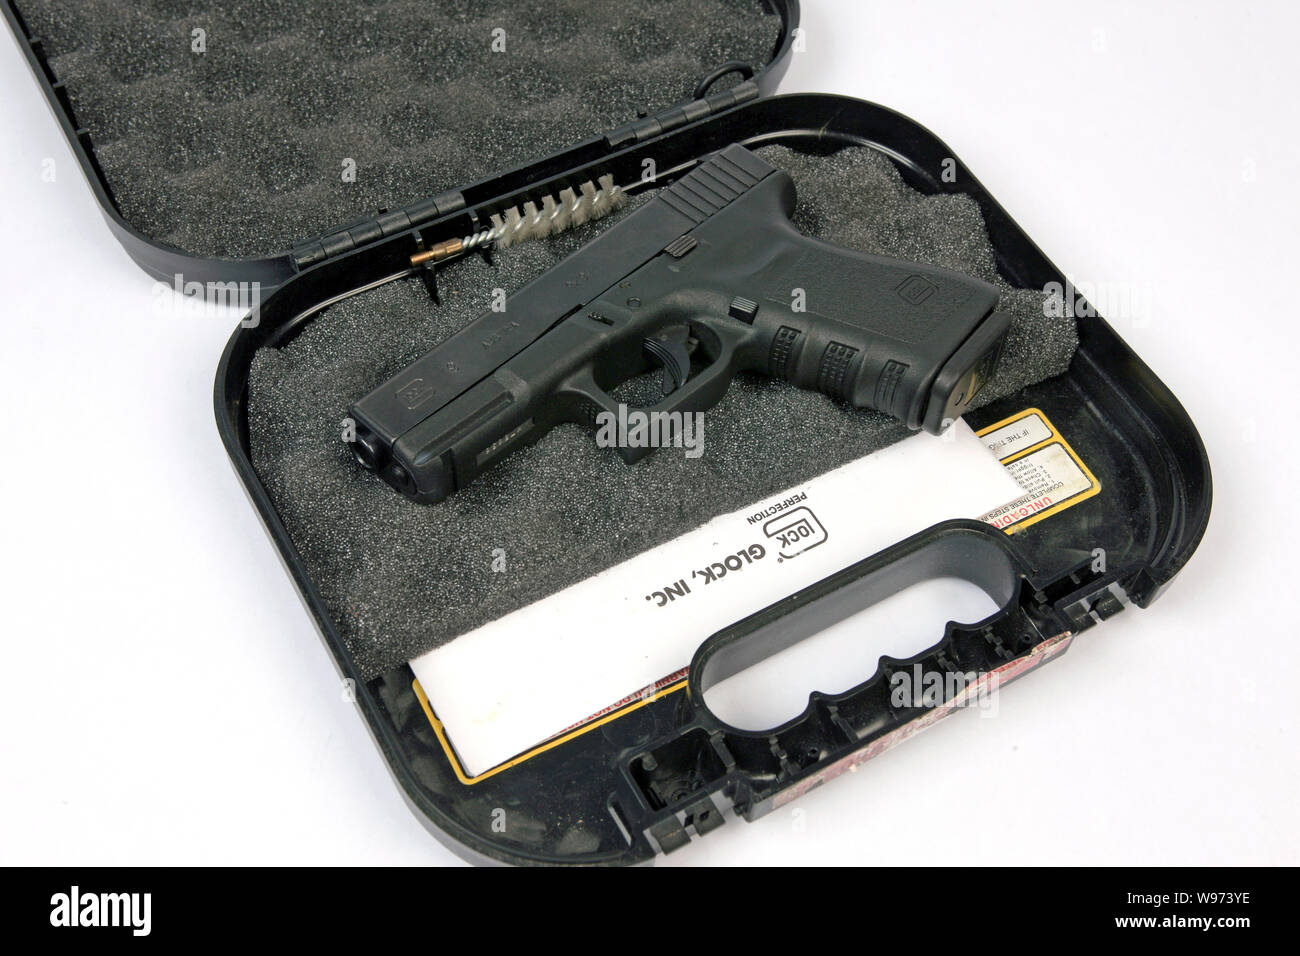 Glock 19 9mm semi-automatico pistola a mano nella sua custodia per trasporto Foto Stock